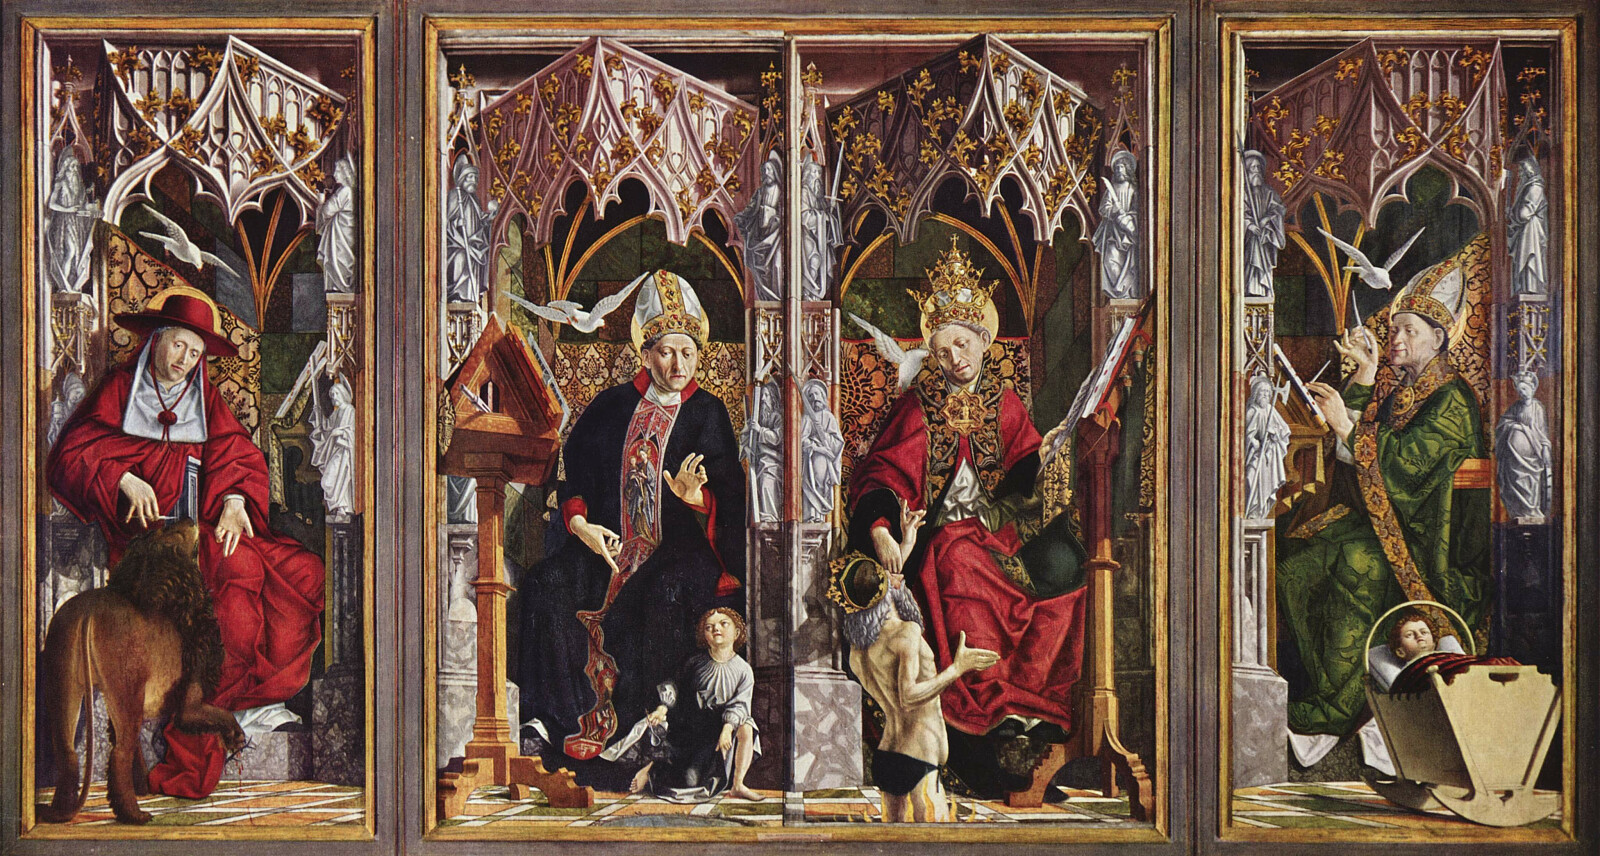 Doktorzy Kościoła: Hieronim, Augustyn, Grzegorz i Ambroży - Michael Pacher, Public domain, via Wikimedia Commons